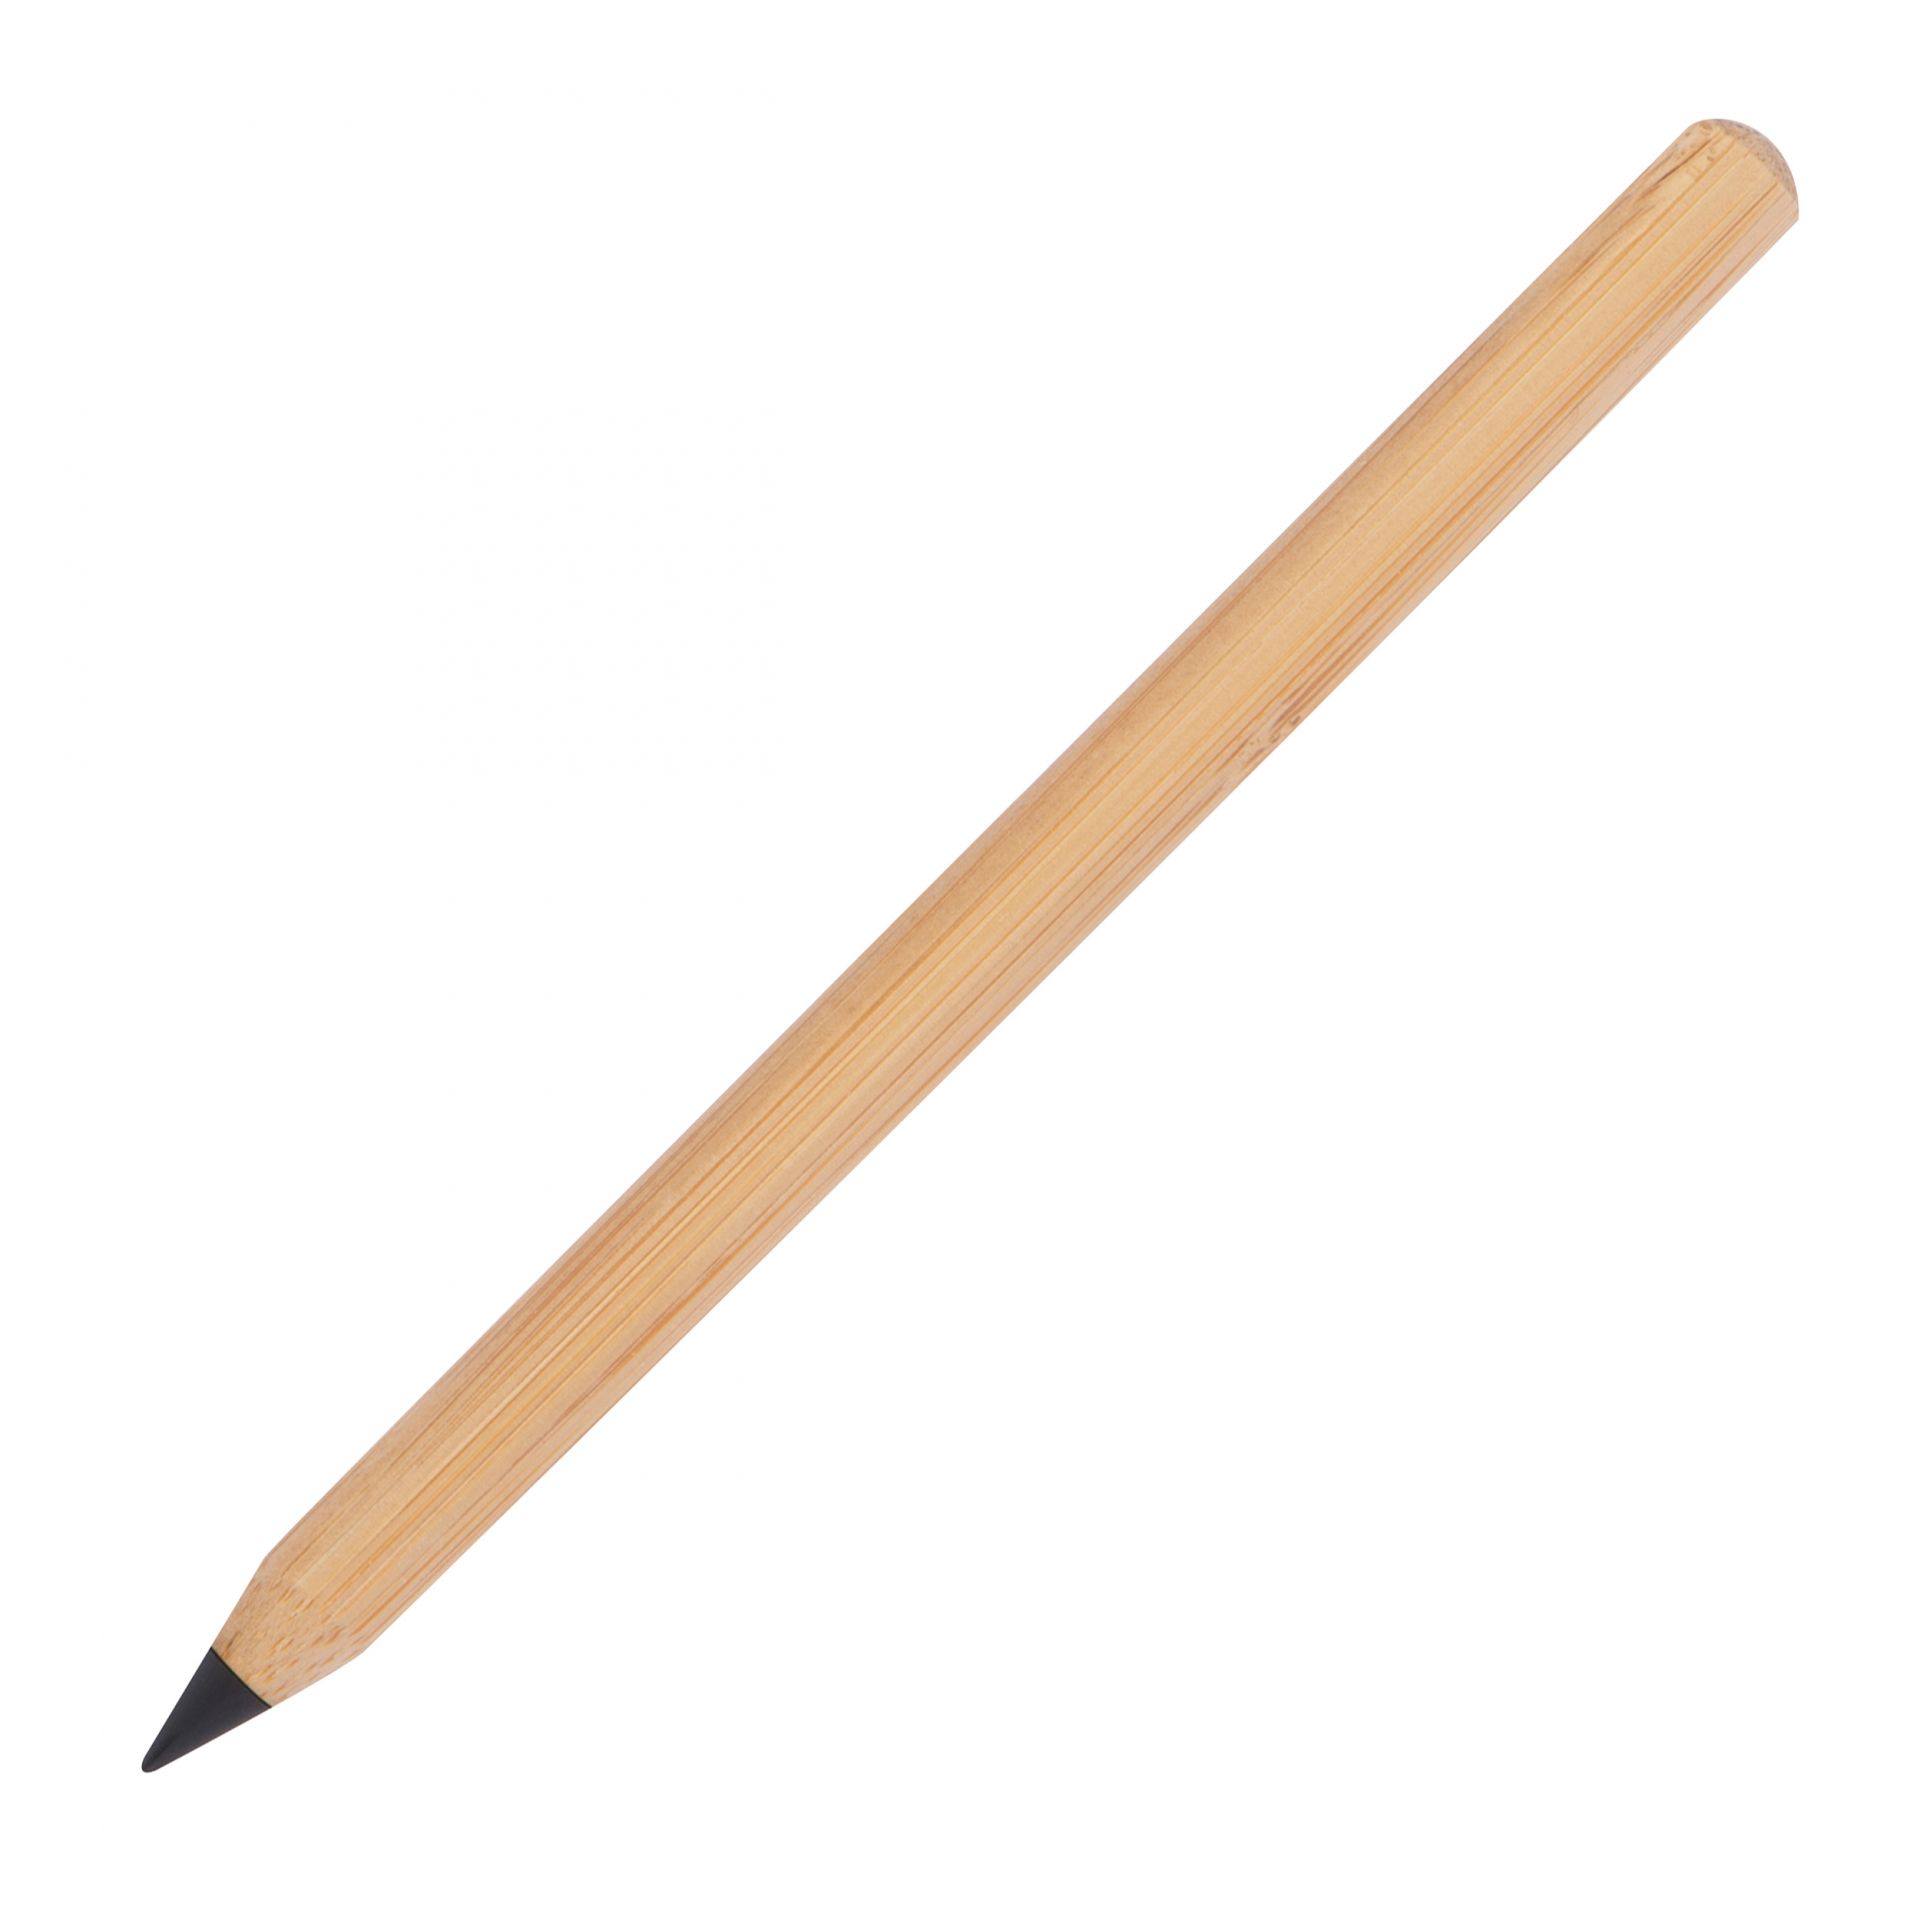 Olovka bez tinte,bamboo